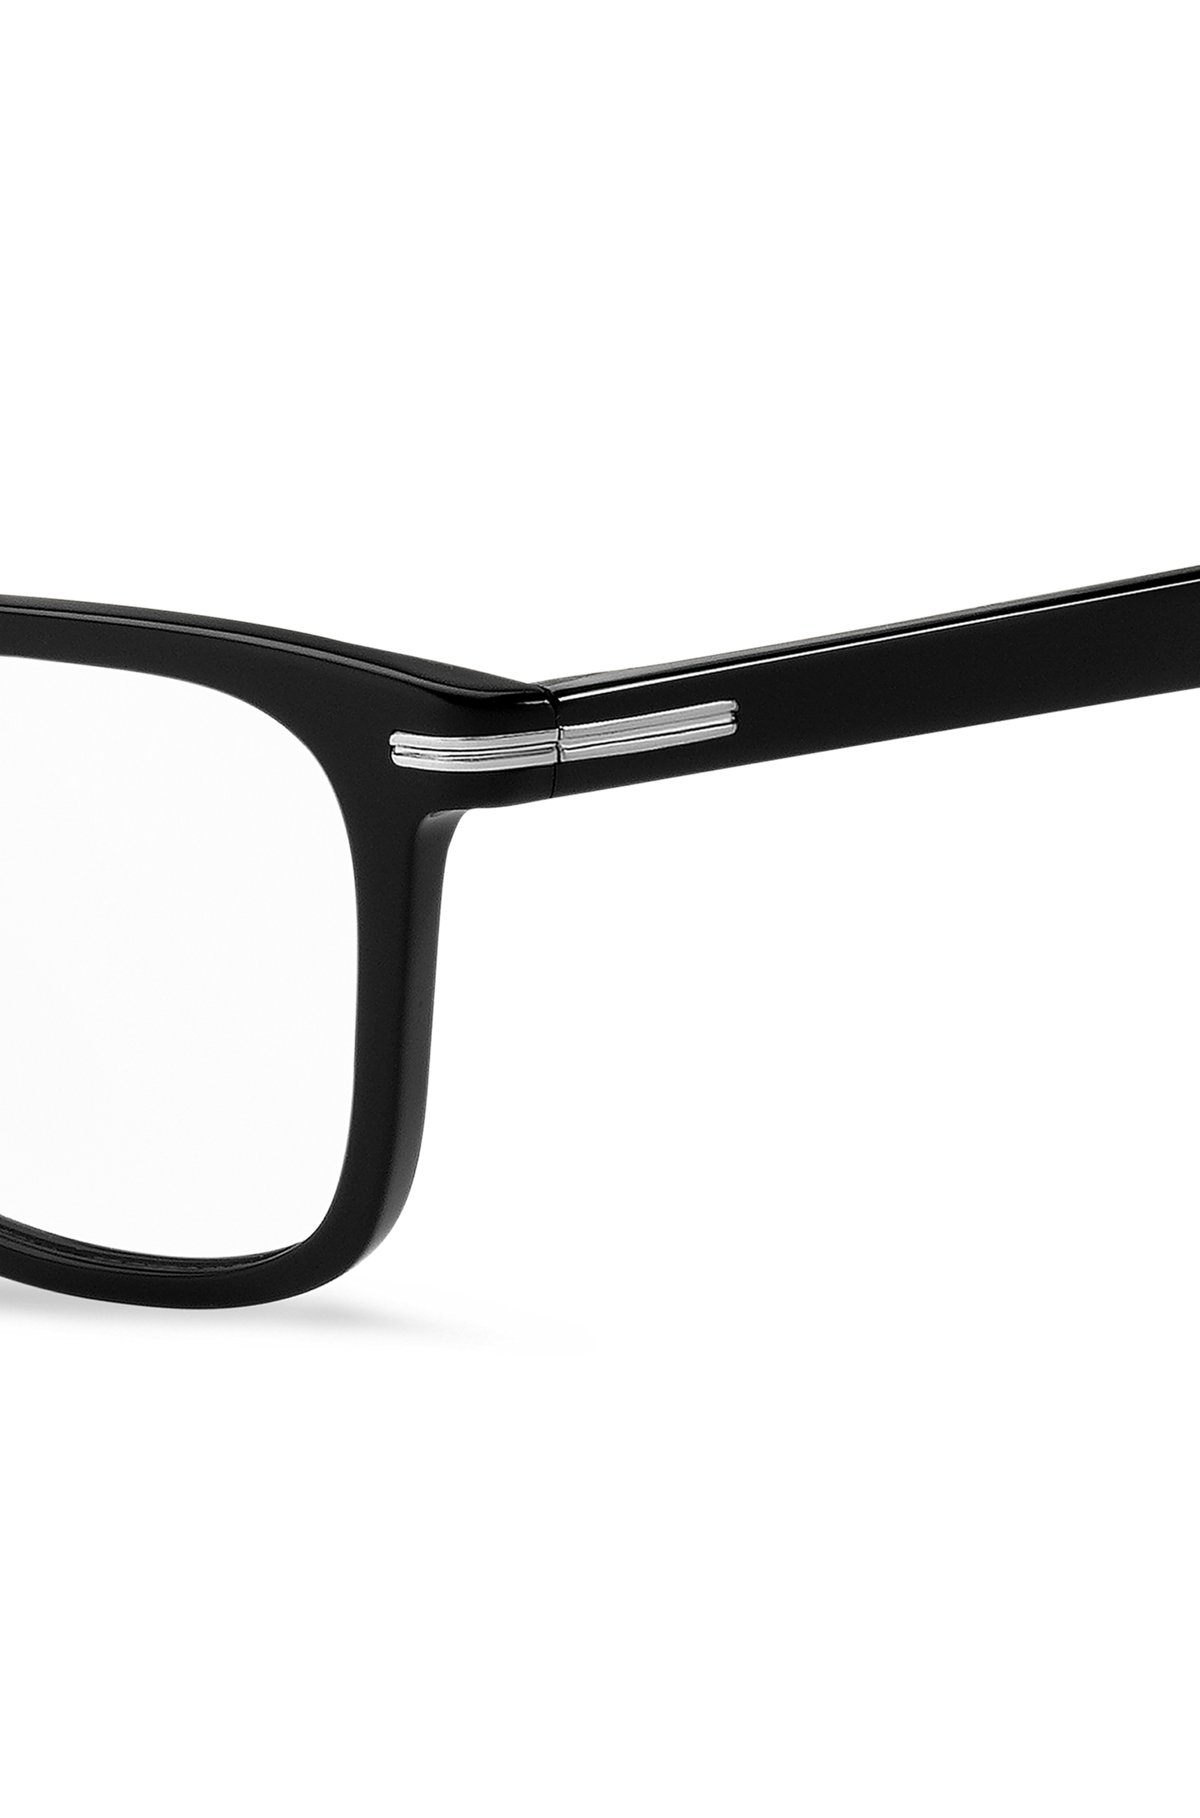 Brillenfassung aus schwarzem Acetat mit charakteristischen silberfarbenen Details, Schwarz